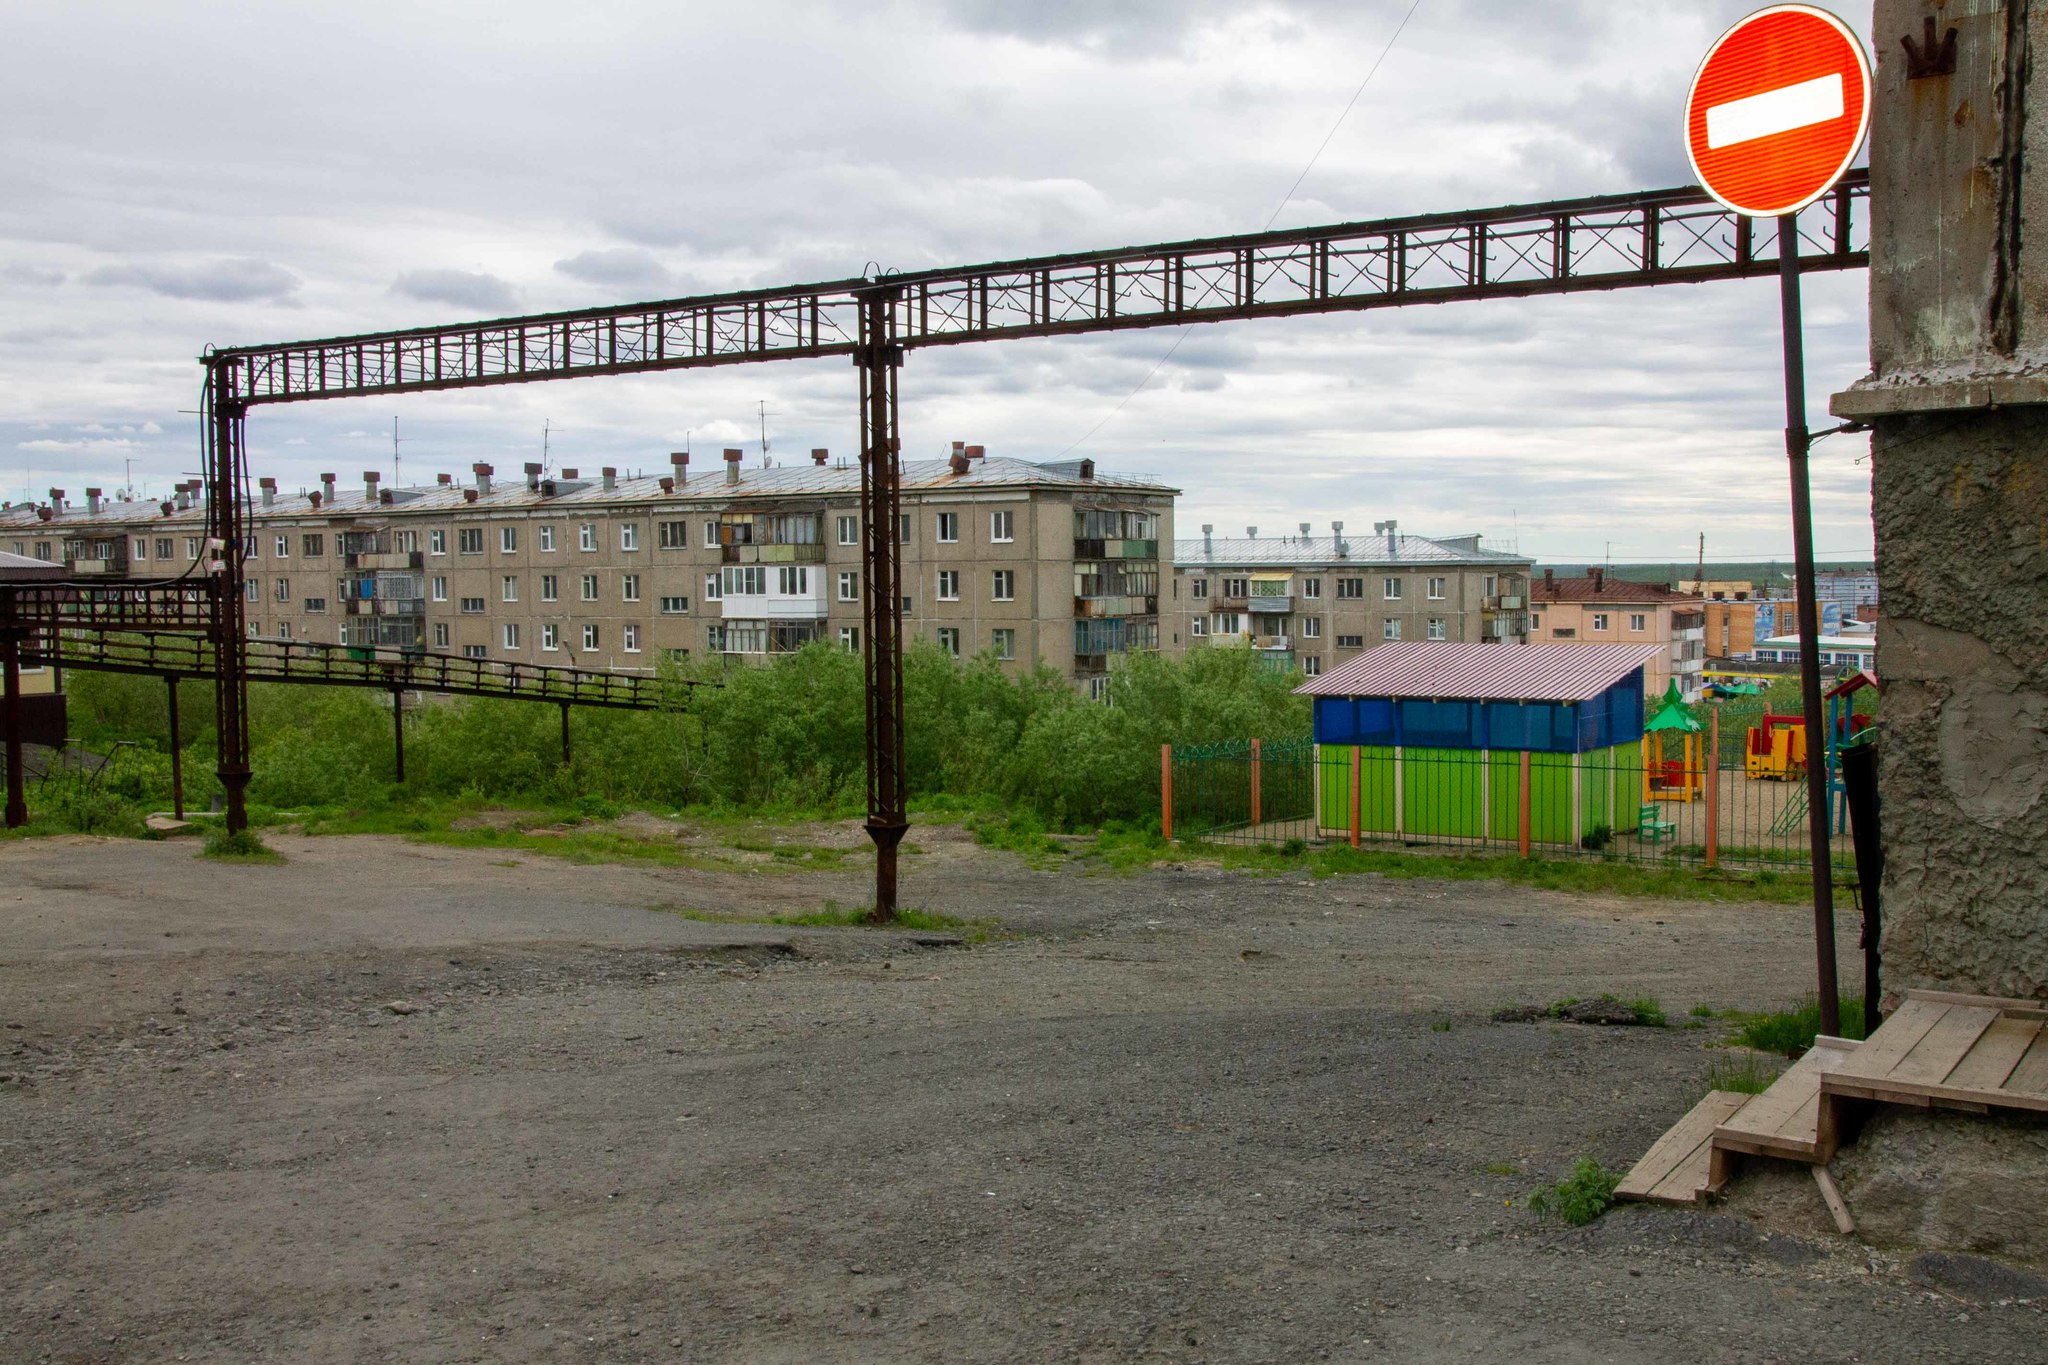 Dudinka. Part 2 - My, Dudinka, Taimyr, Far North, Krasnoyarsk region, Arctic, The photo, Longpost